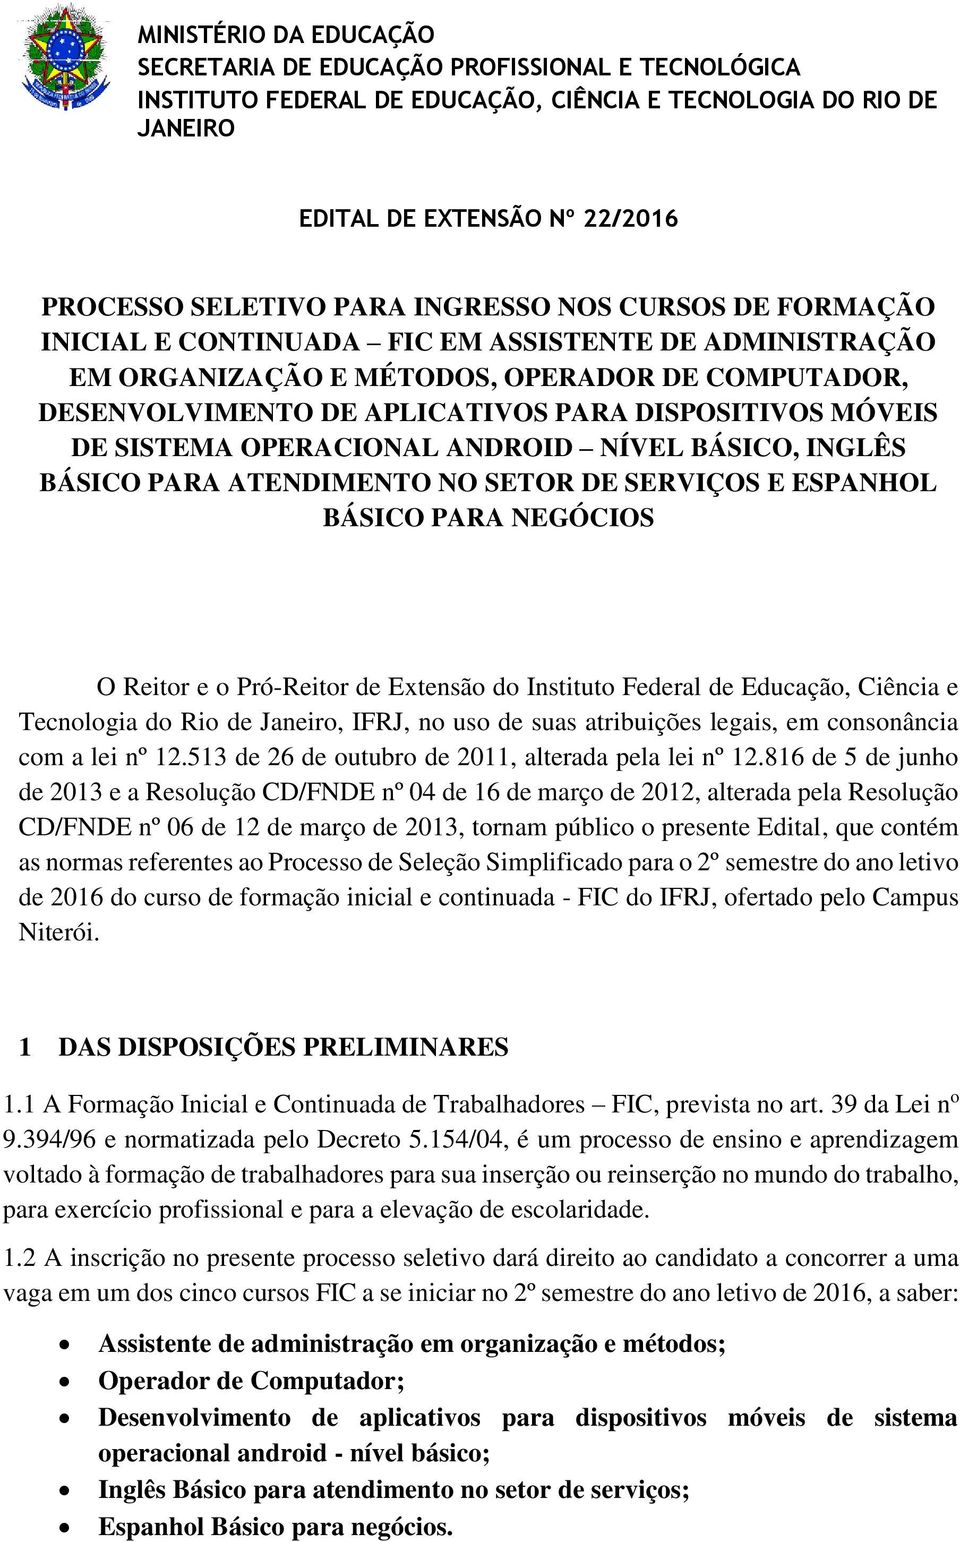 Pró-Reitor de Extensão do Instituto Federal de Educação, Ciência e Tecnologia do Rio de Janeiro, IFRJ, no uso de suas atribuições legais, em consonância com a lei nº 12.